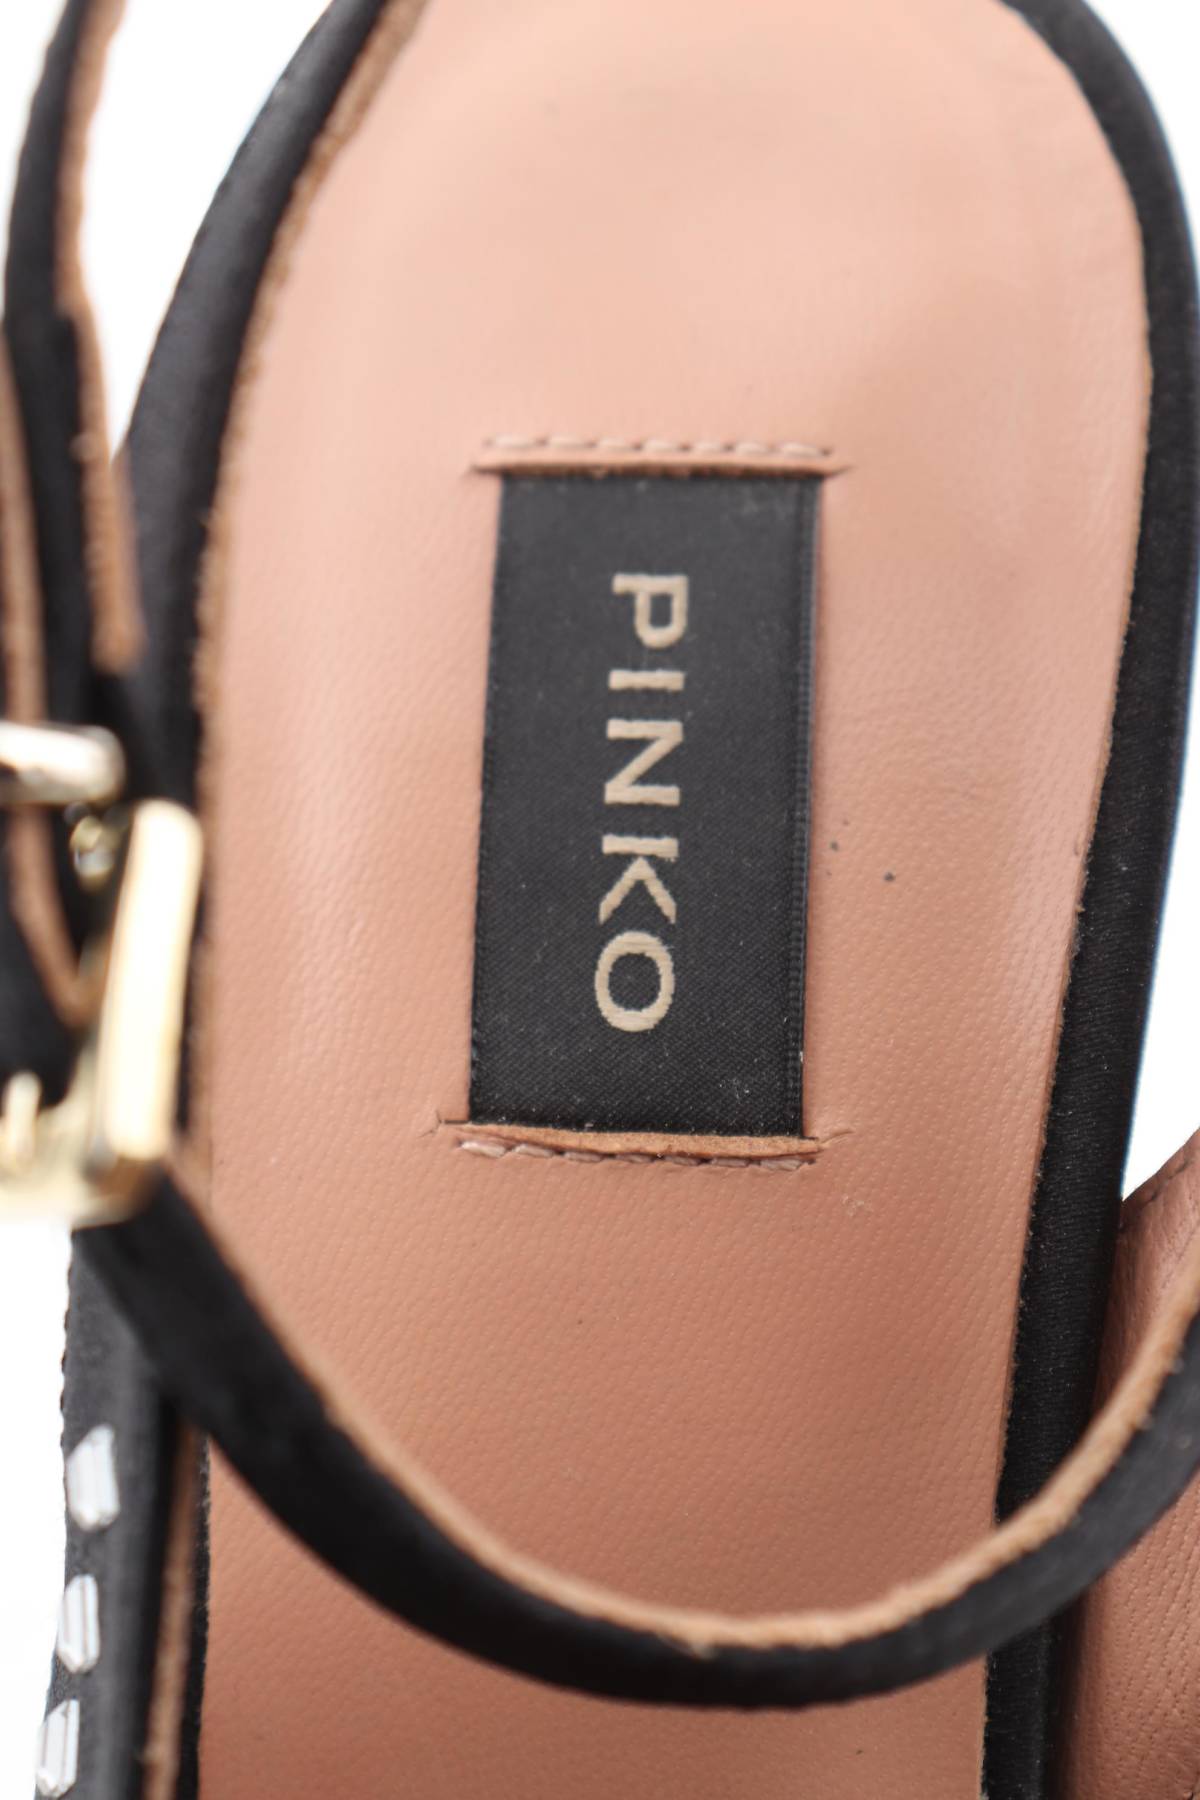 Дамски обувки Pinko5